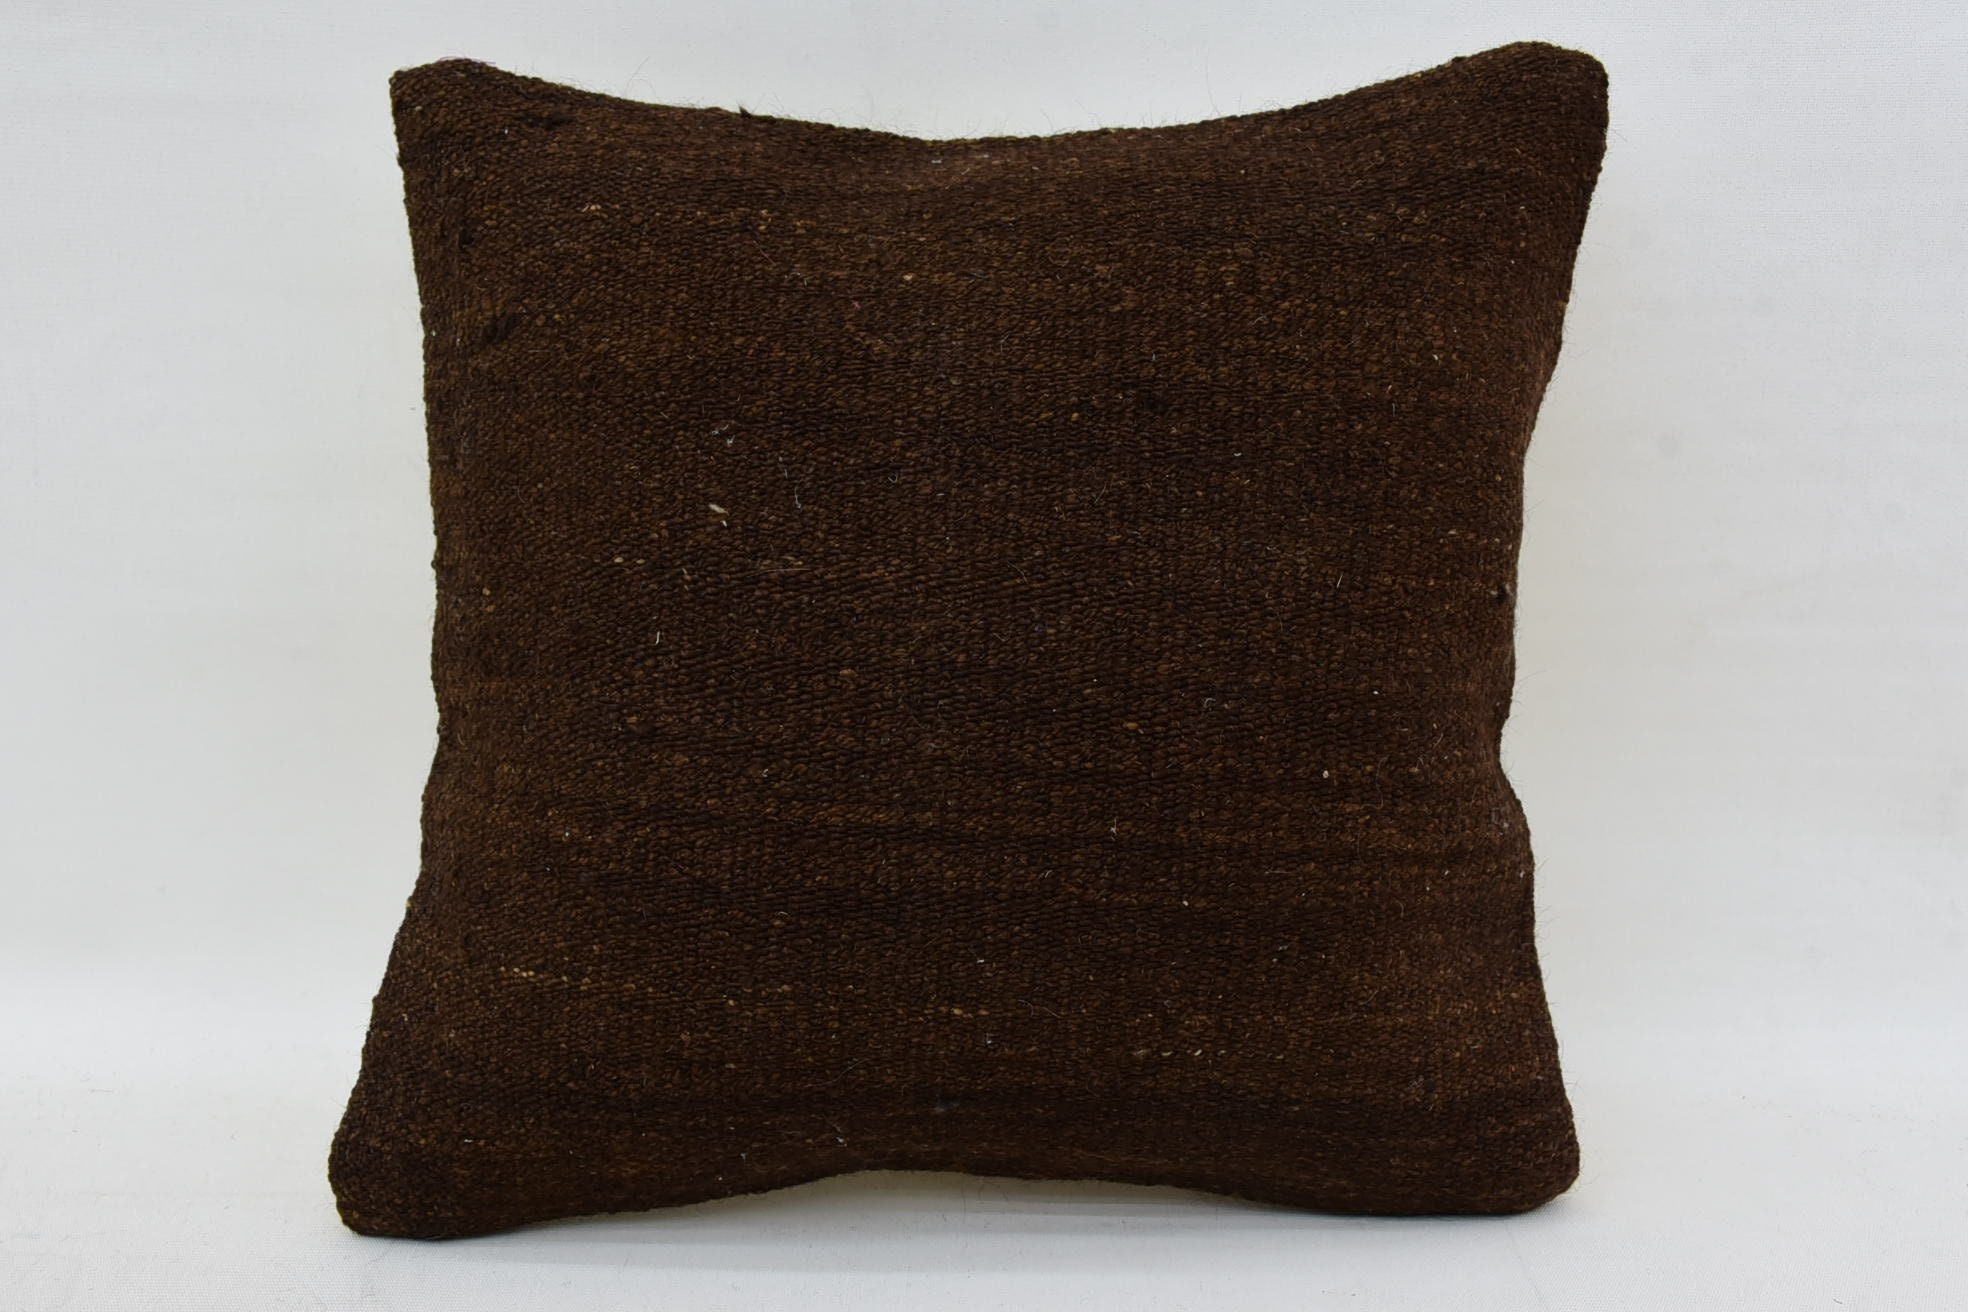 Antique Pillows, Home Decor Pillow, Southwestern Pillow Case, 14"x14" Brown Cushion Cover, Interior Designer Pillow